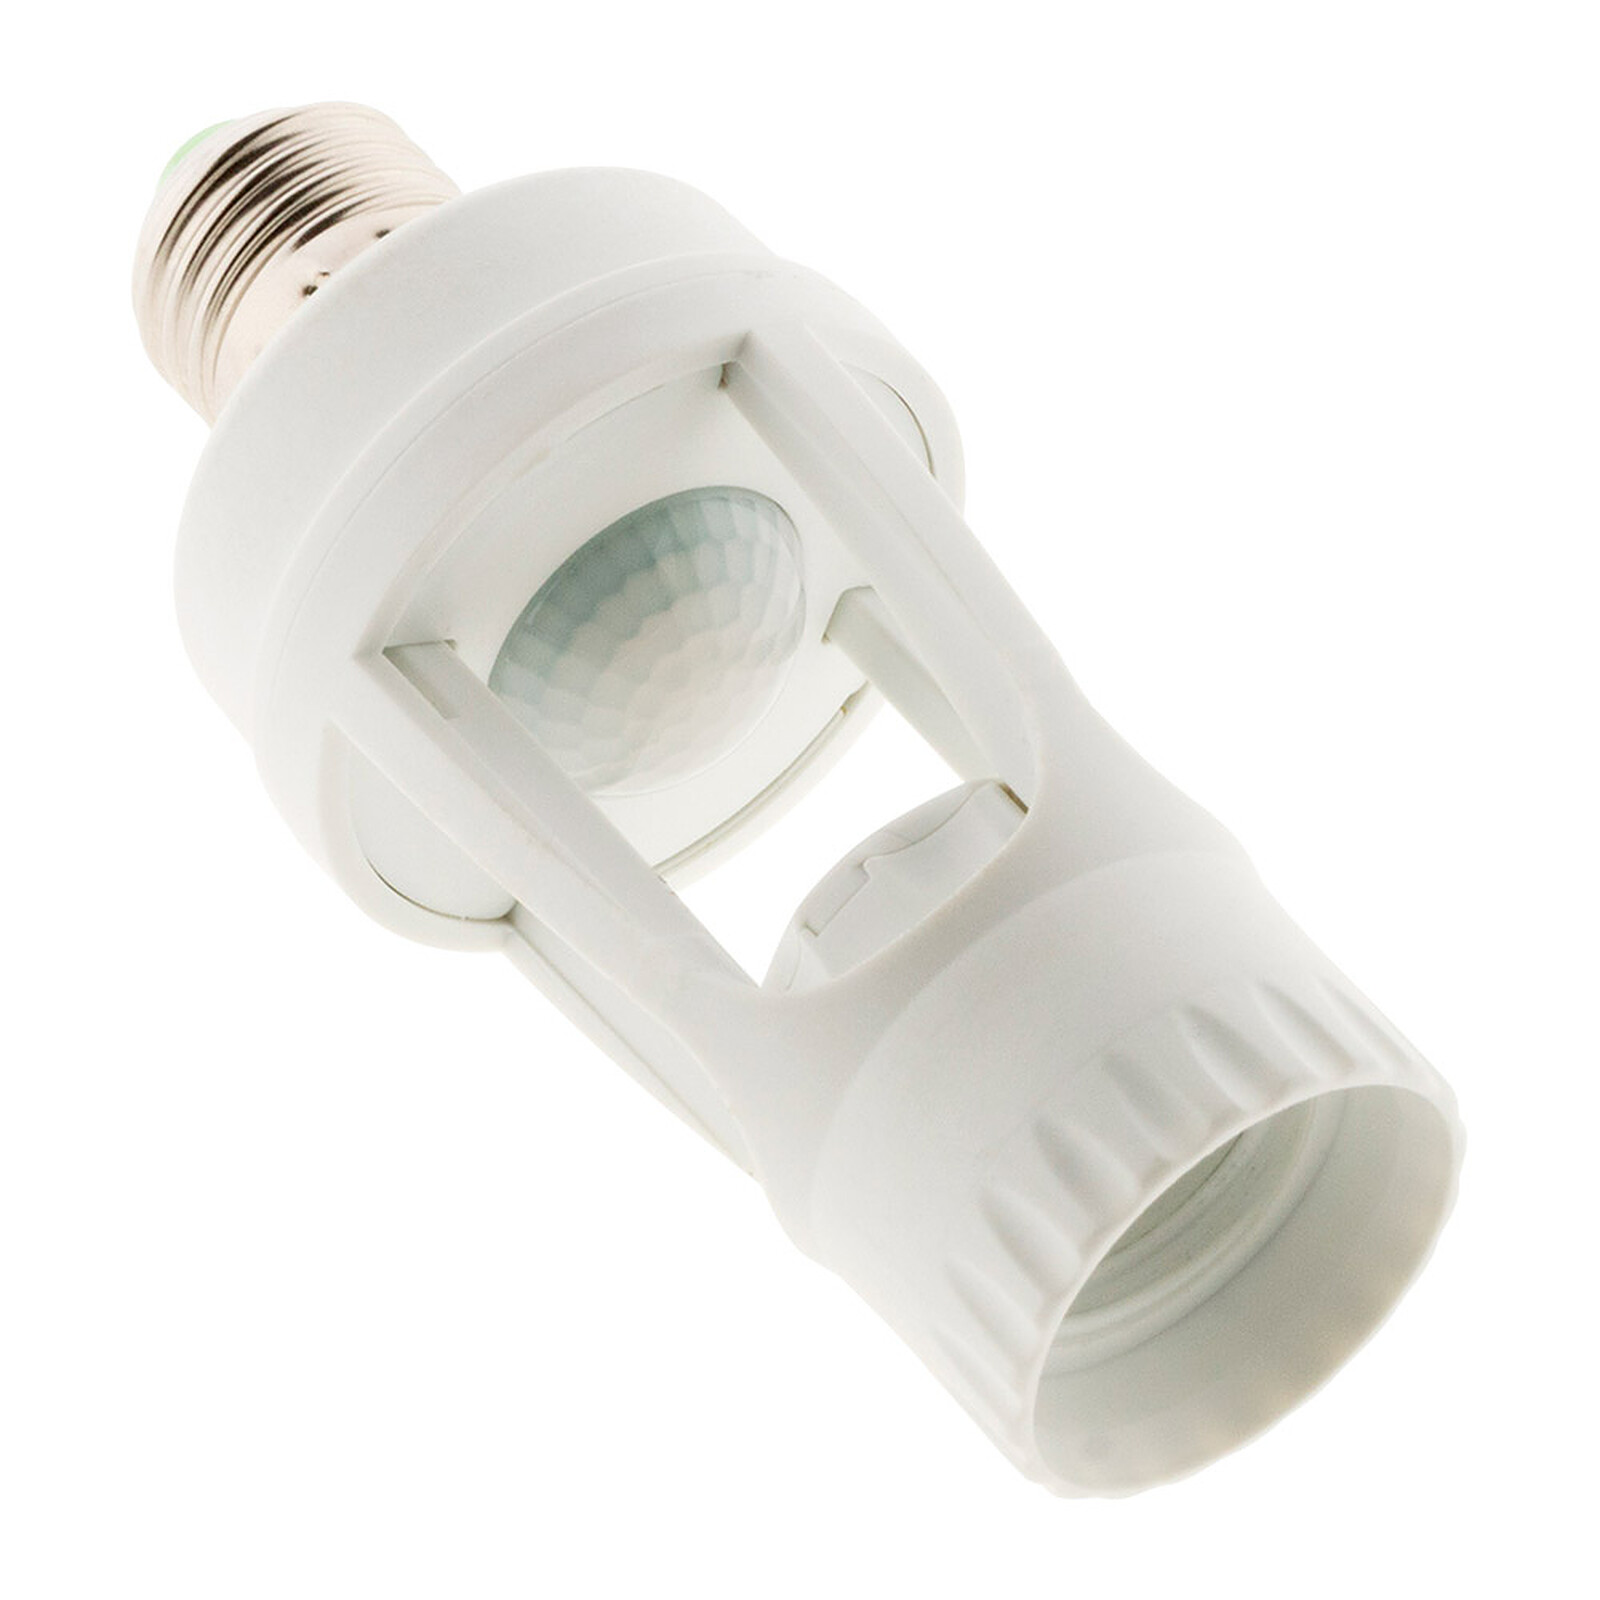 Support ampoule E27 détection de présence